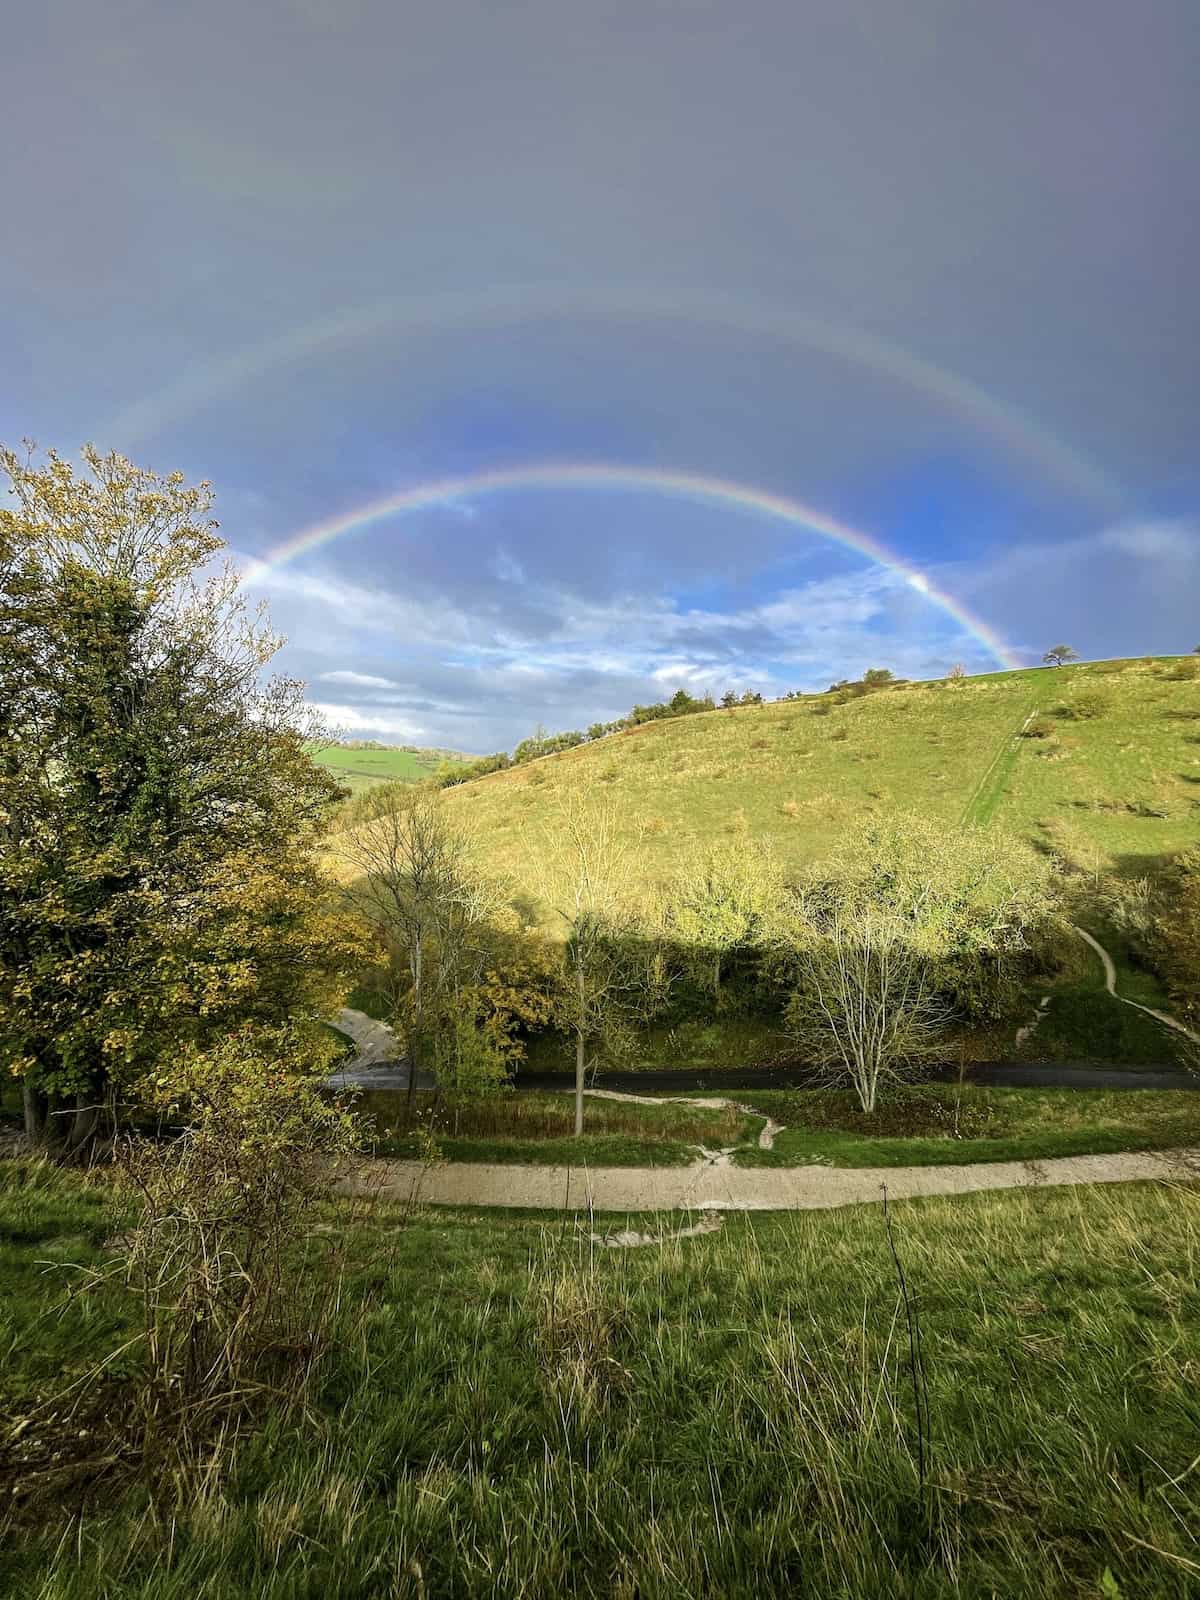 Double rainbow over a hill.